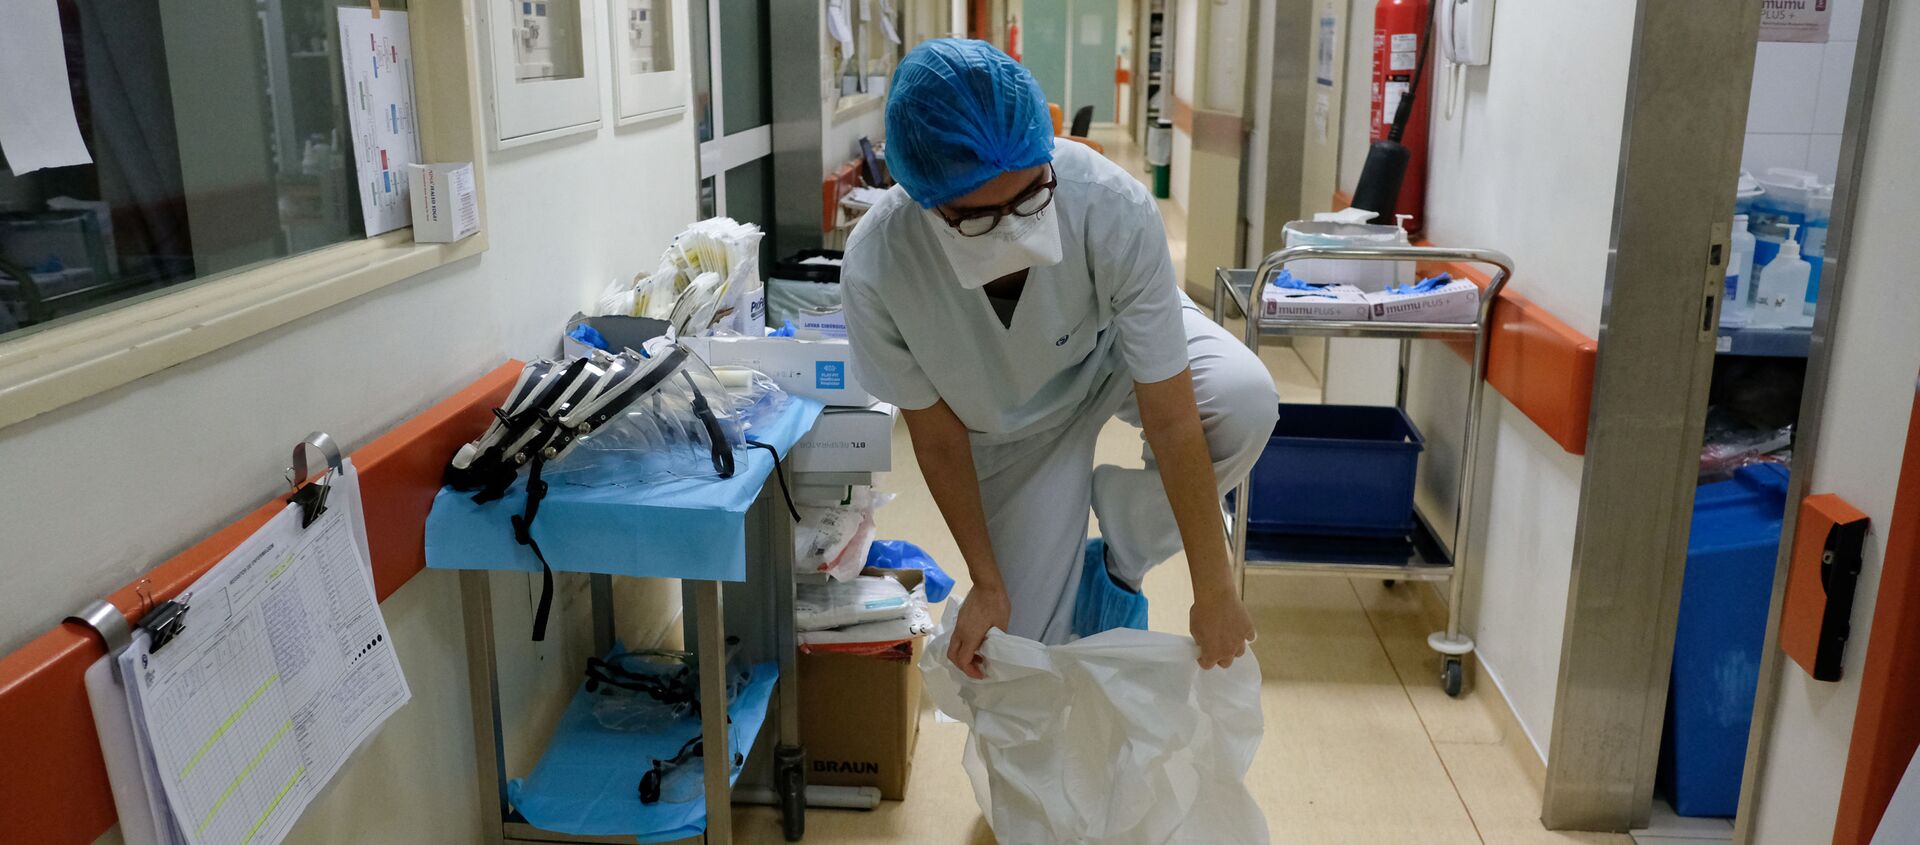 تستعد الممرضة إيناس لوبيز لدخول غرفة مريض كوفيد-19 في مستشفى ساو جوزيه، وحدة العناية المركزة أثناء جائحة فيروس كورونا (كوفيد-19) في لشبونة، البرتغال، 19 فبراير 2021 - سبوتنيك عربي, 1920, 18.11.2021